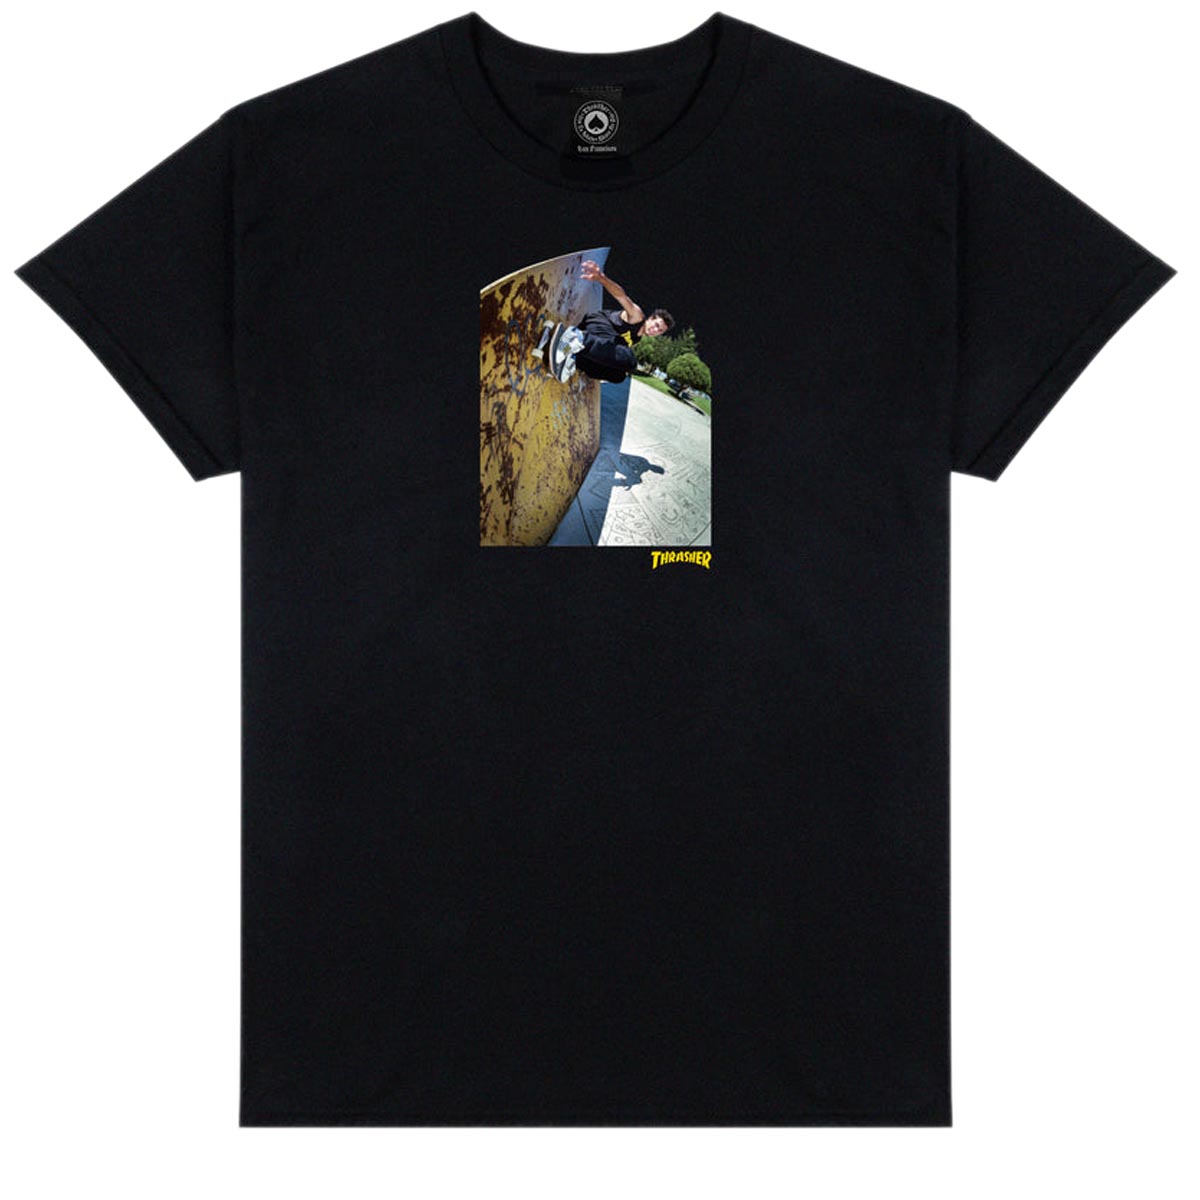 Thrasher Mic-e Wallride T-Shirt - Black image 1